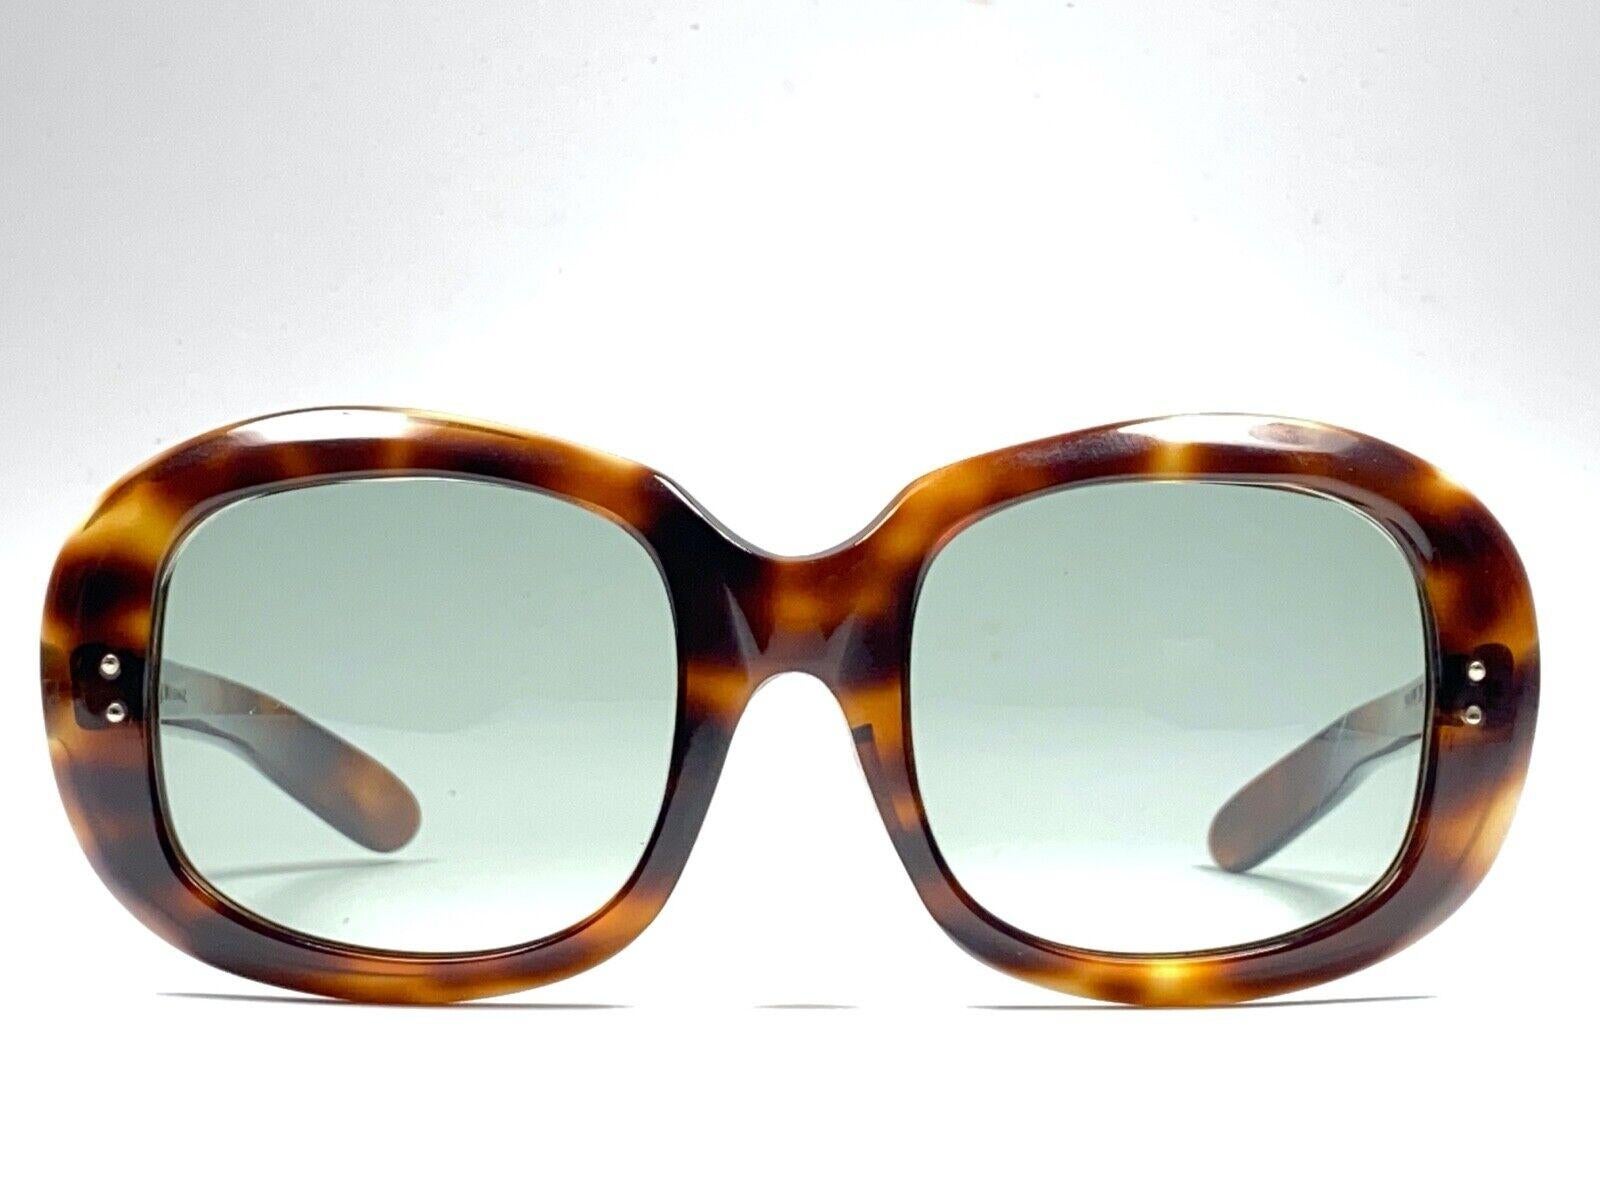 Vintage seltenes Sammlerstück vintage Philippe Chevalier übergroße Sonnenbrille mit mittelgrünen Gläsern.   
Ein hervorragender Fund in neuem, nie getragenem Zustand. 
Bitte beachten Sie, dass dieser Artikel aufgrund der Lagerung geringere